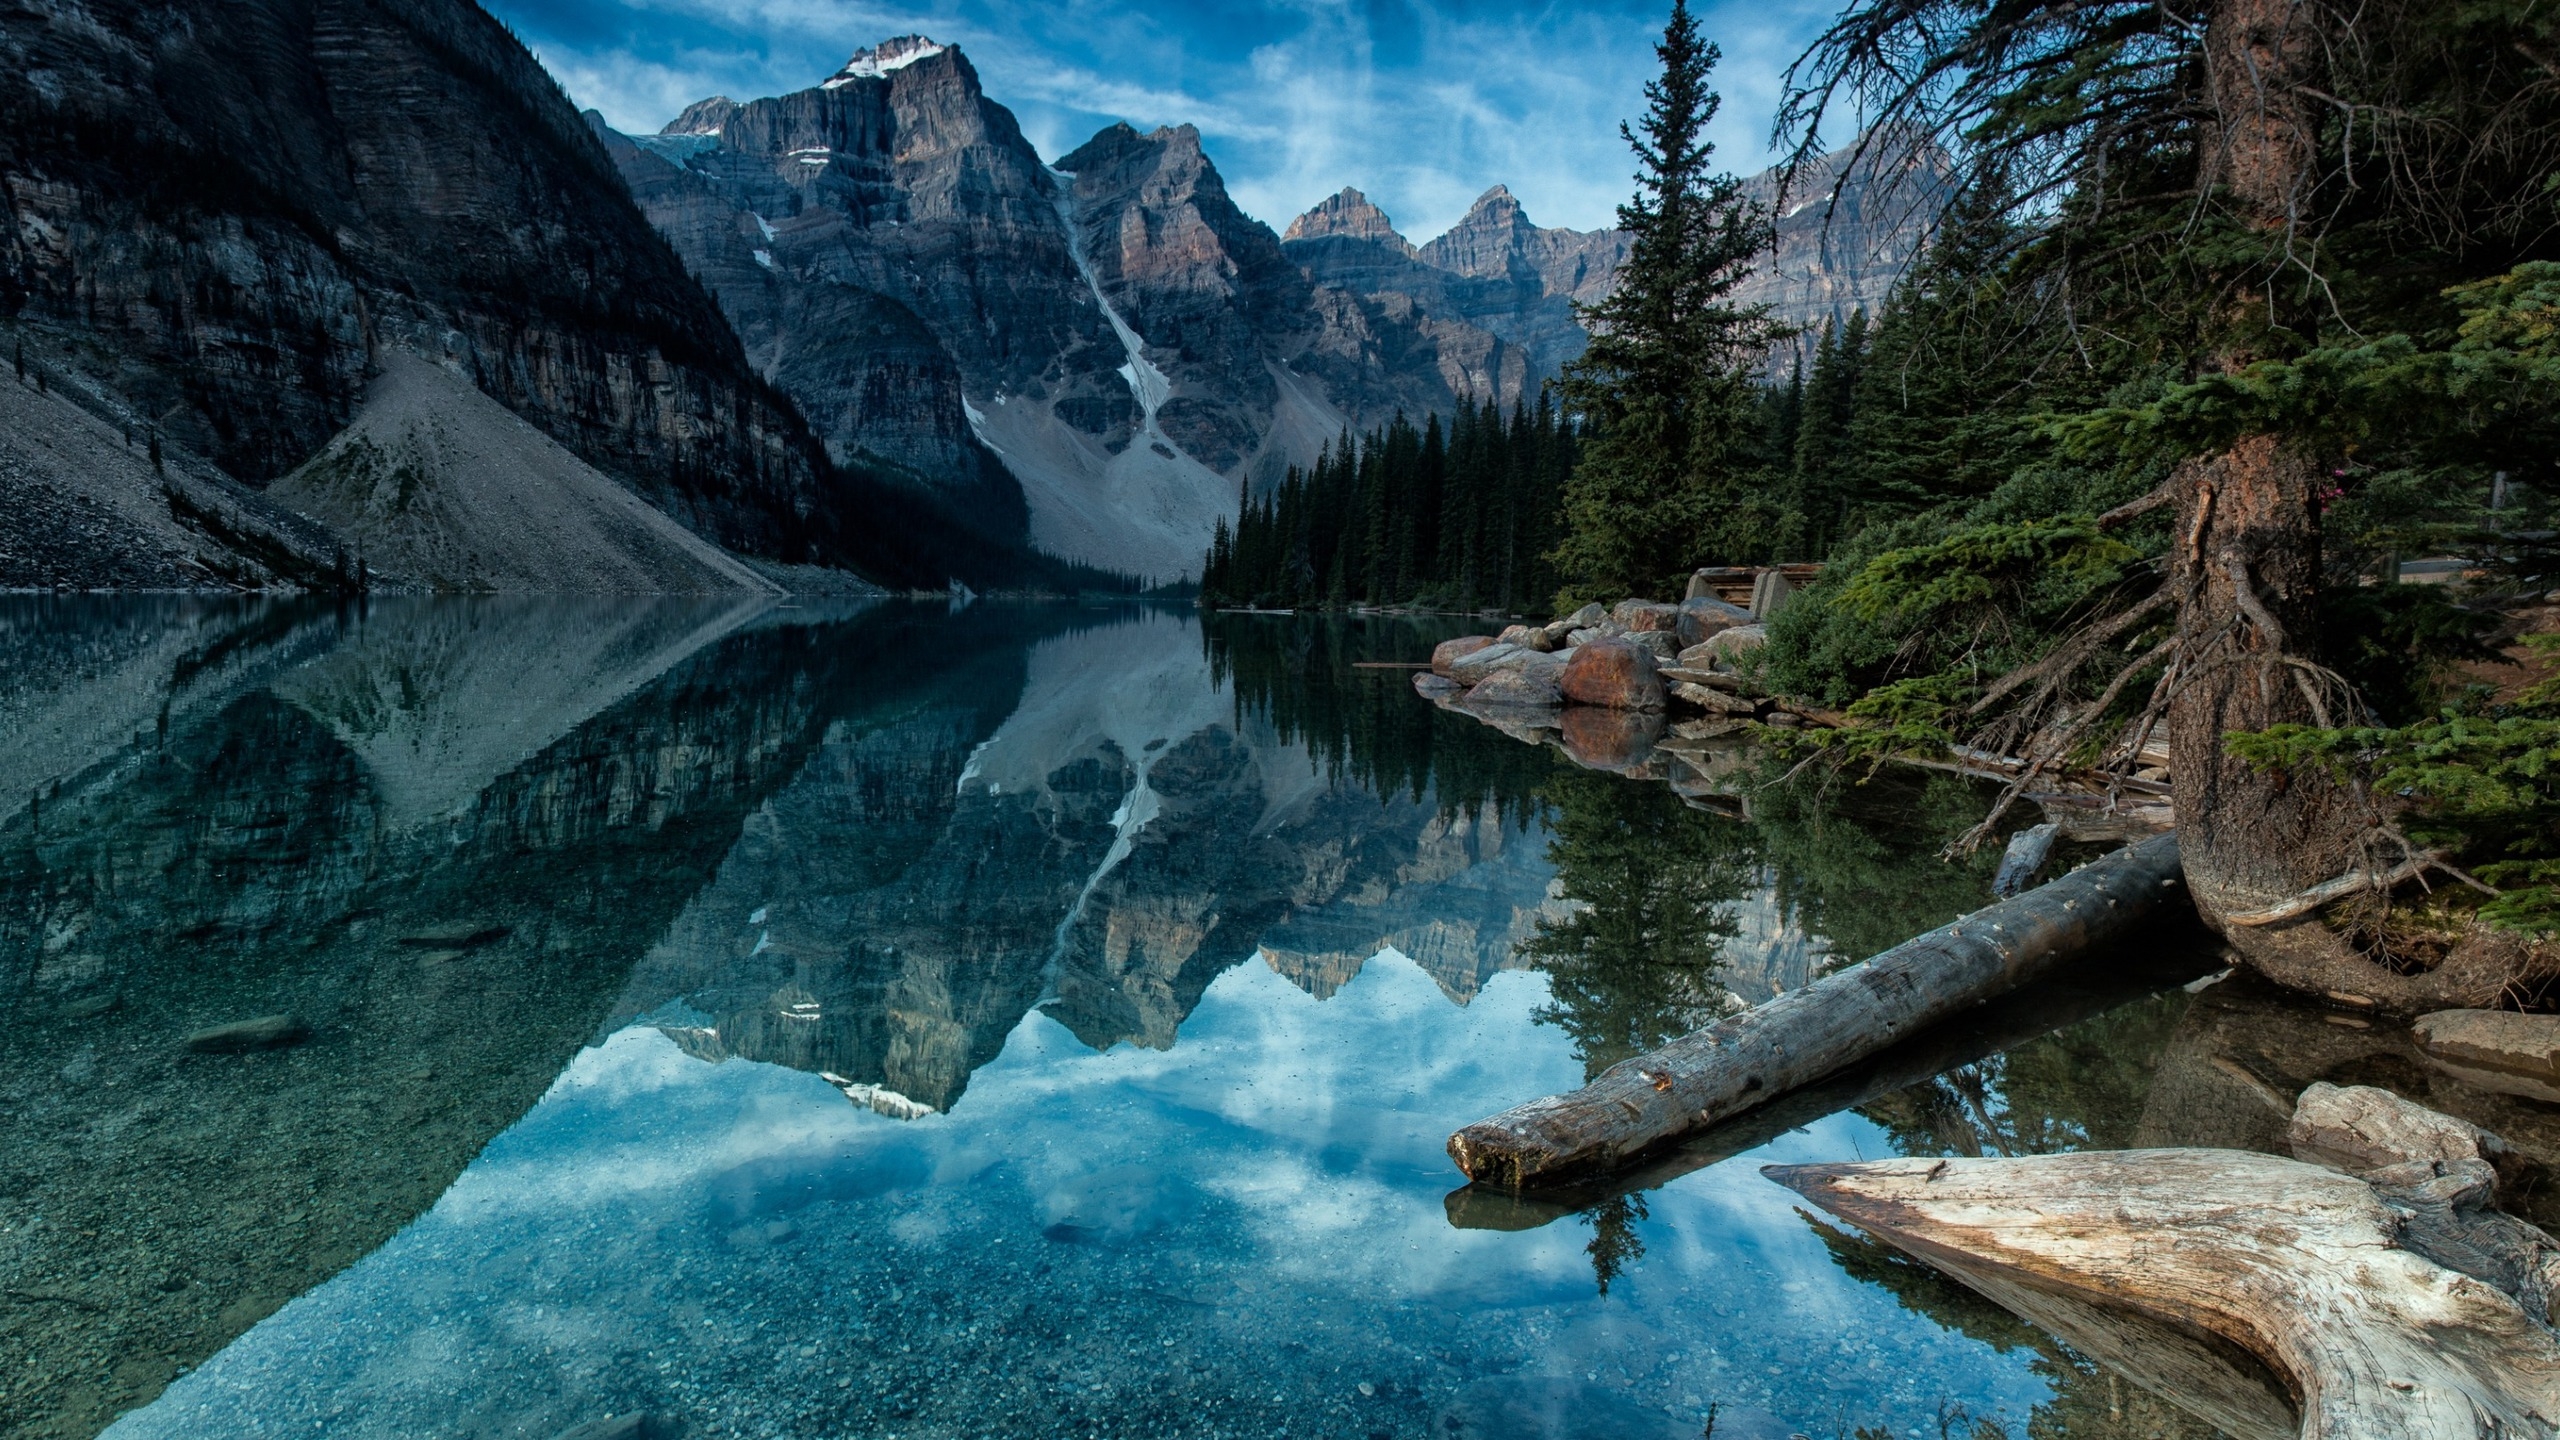 Moraine Lake Alberta Canada for 2560x1440 HDTV resolution